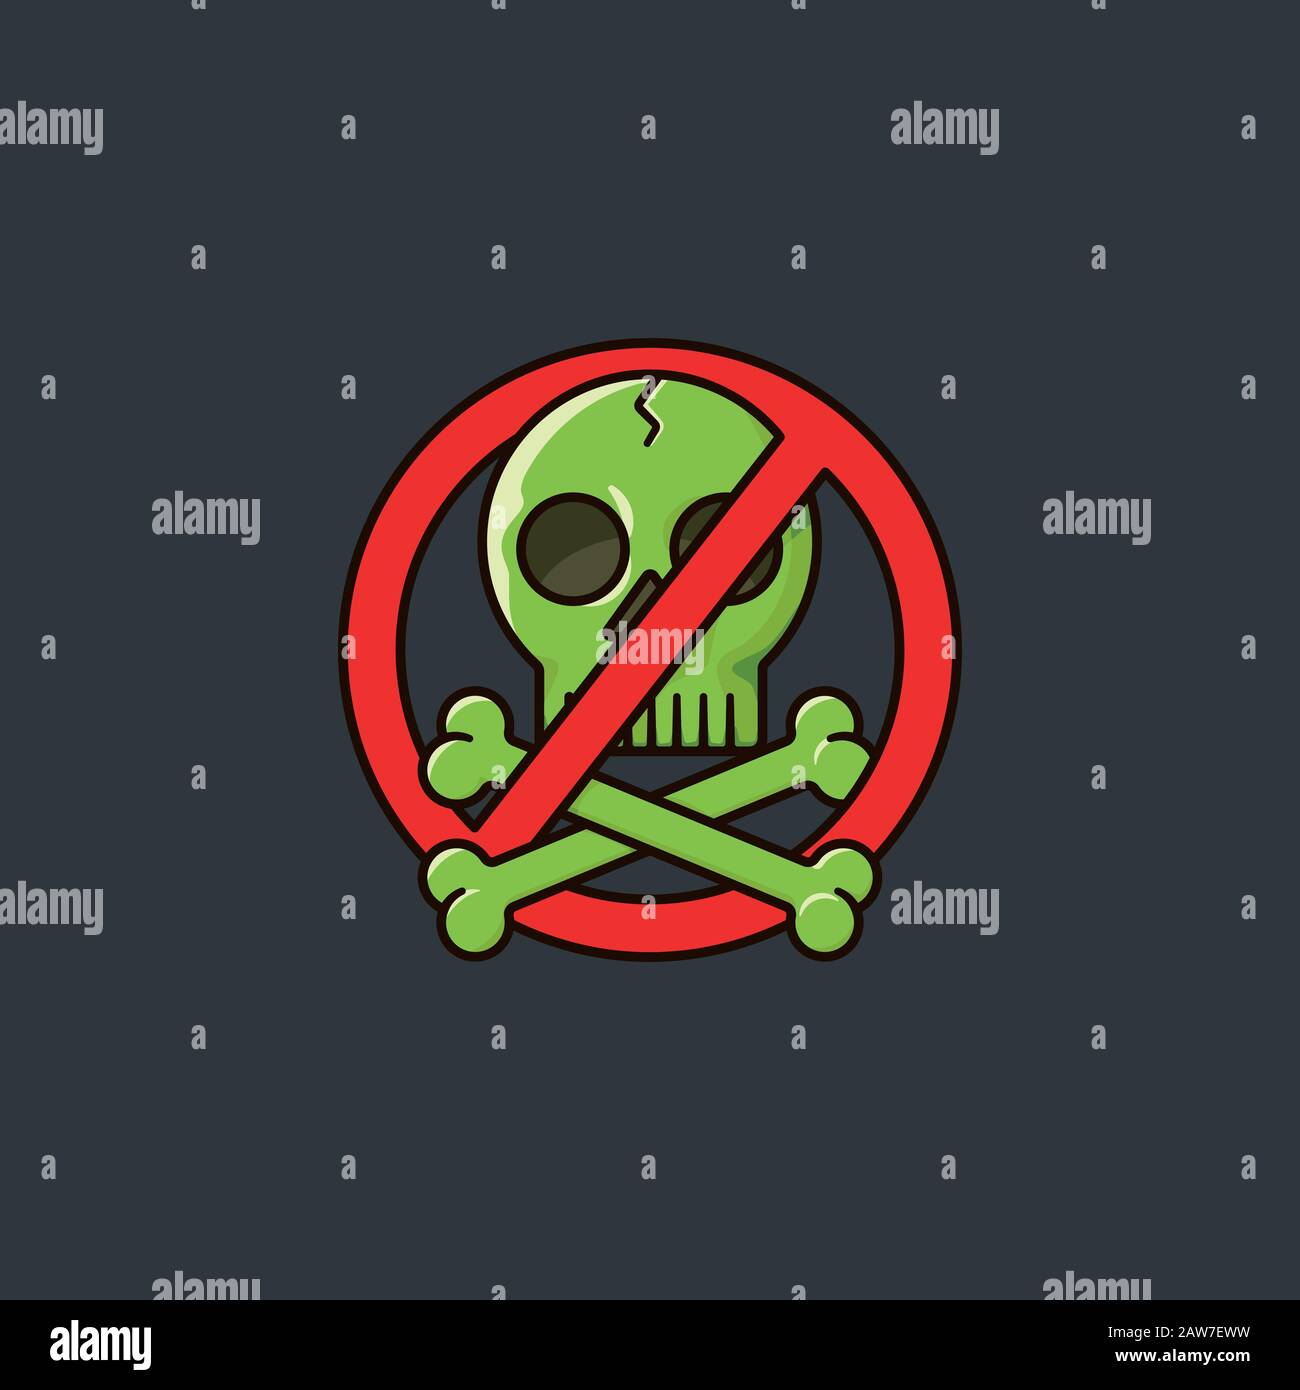 Farbvektorillustration mit Anti-Piracy-Symbol mit Schädel und gekreuzten Knochen, die mit verbotenen Zeichen.Illustration verflochten sind. Stock Vektor